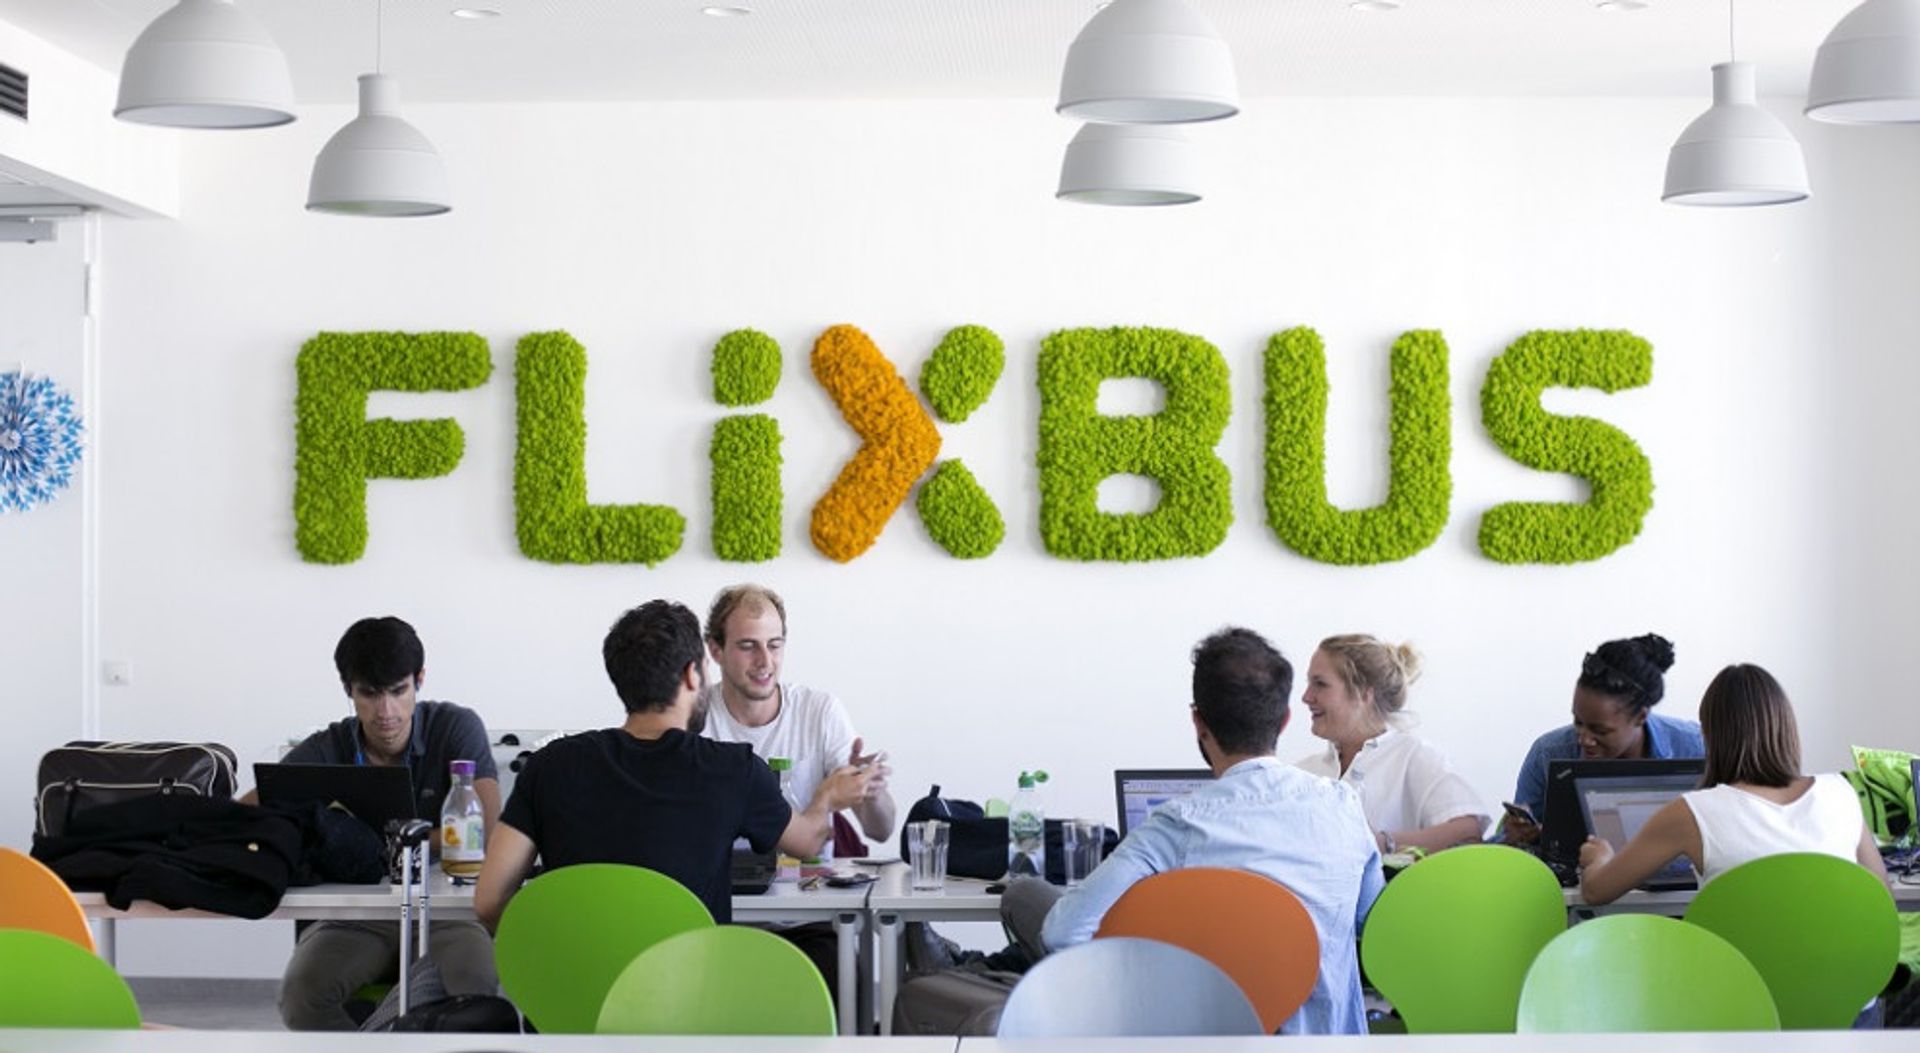 FlixBus zwiększa zatrudnienie w Warszawie. Otwiera nowy HUB